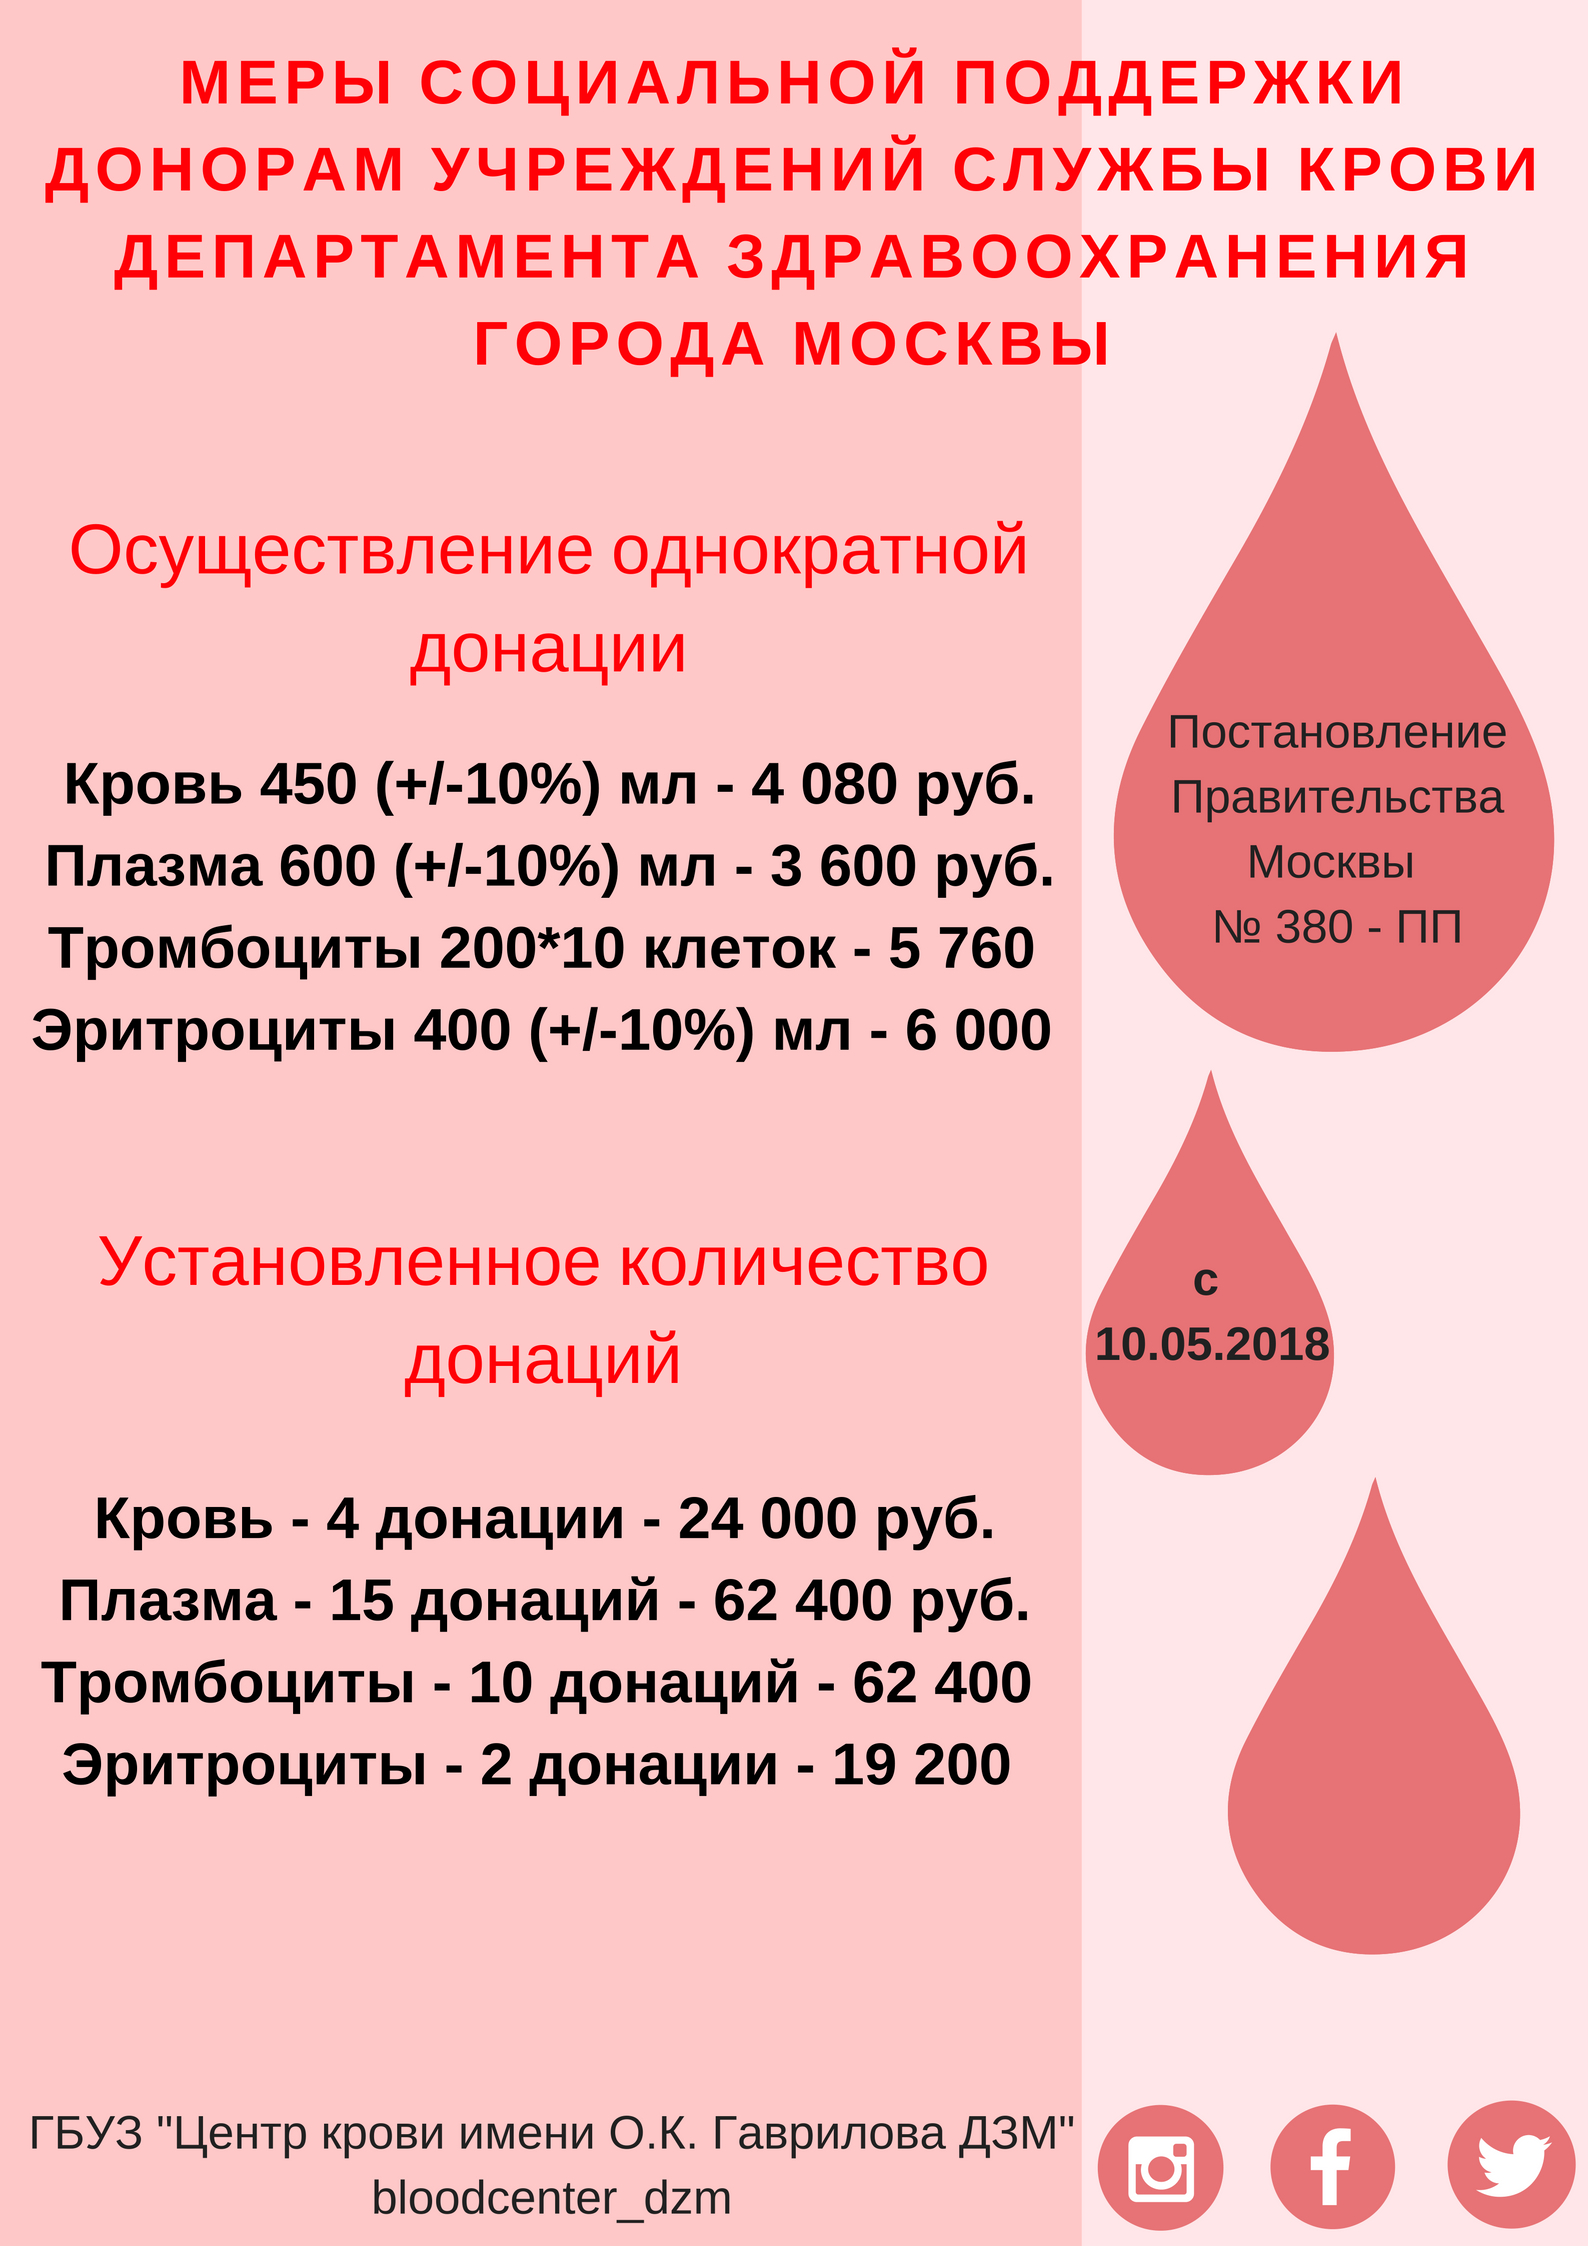 Почетный донор сколько донаций. Вознаграждение за донорство крови. Плата донорам за сдачу крови. Сколько платят за сдачу крови в Москве. Почётный донор Москвы льготы.